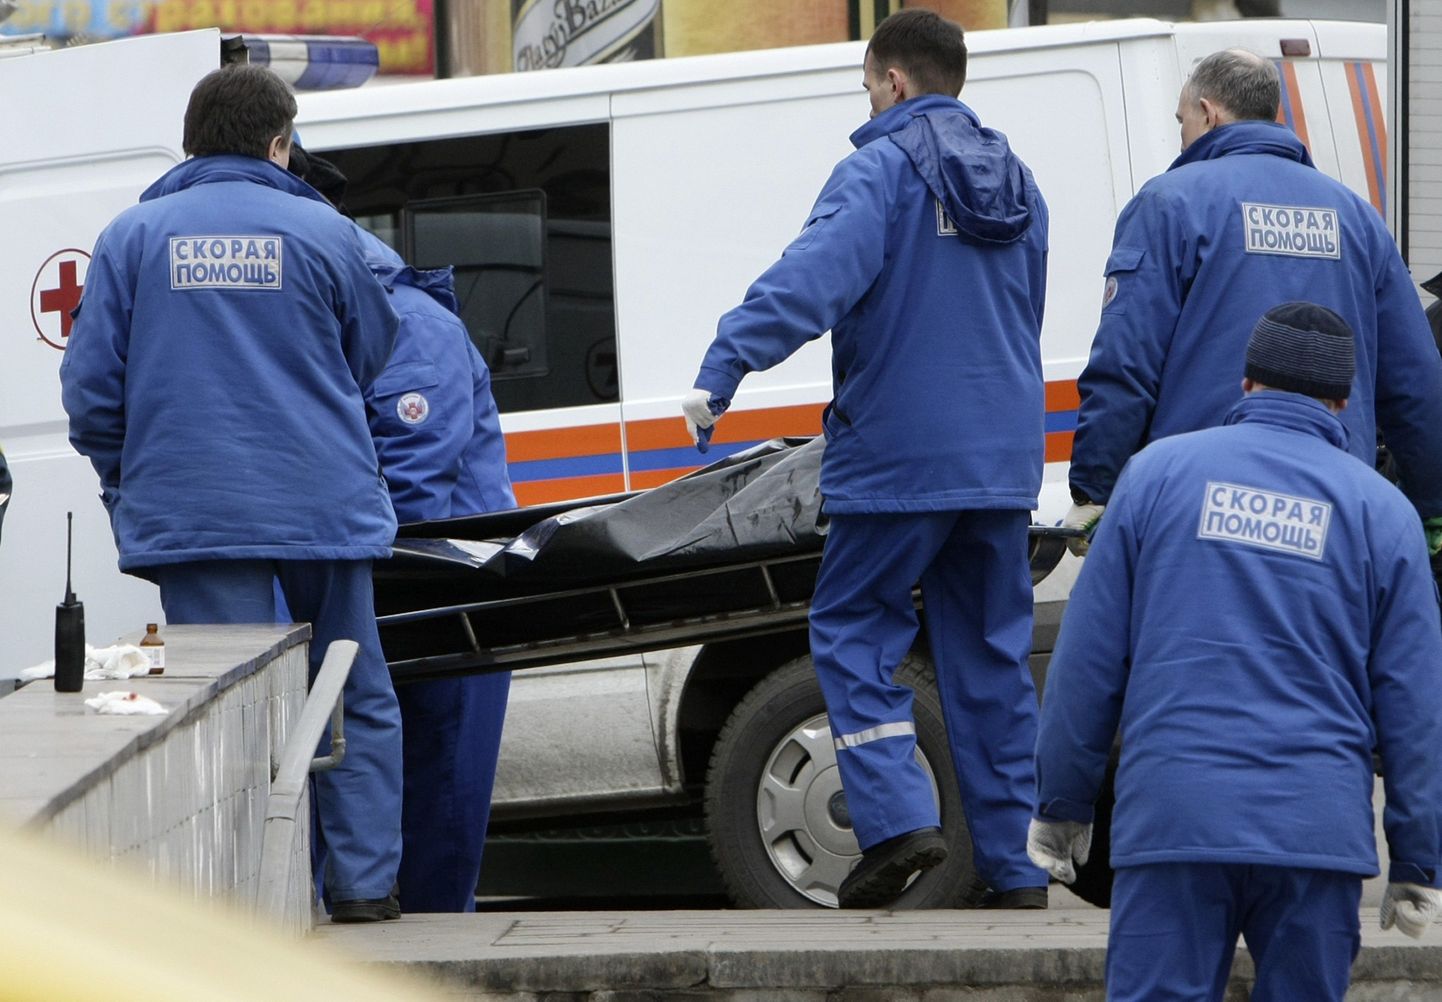 Vene eriolukordade ministeeriumi töötajad toimetavad surnukeha kiirabiautosse.